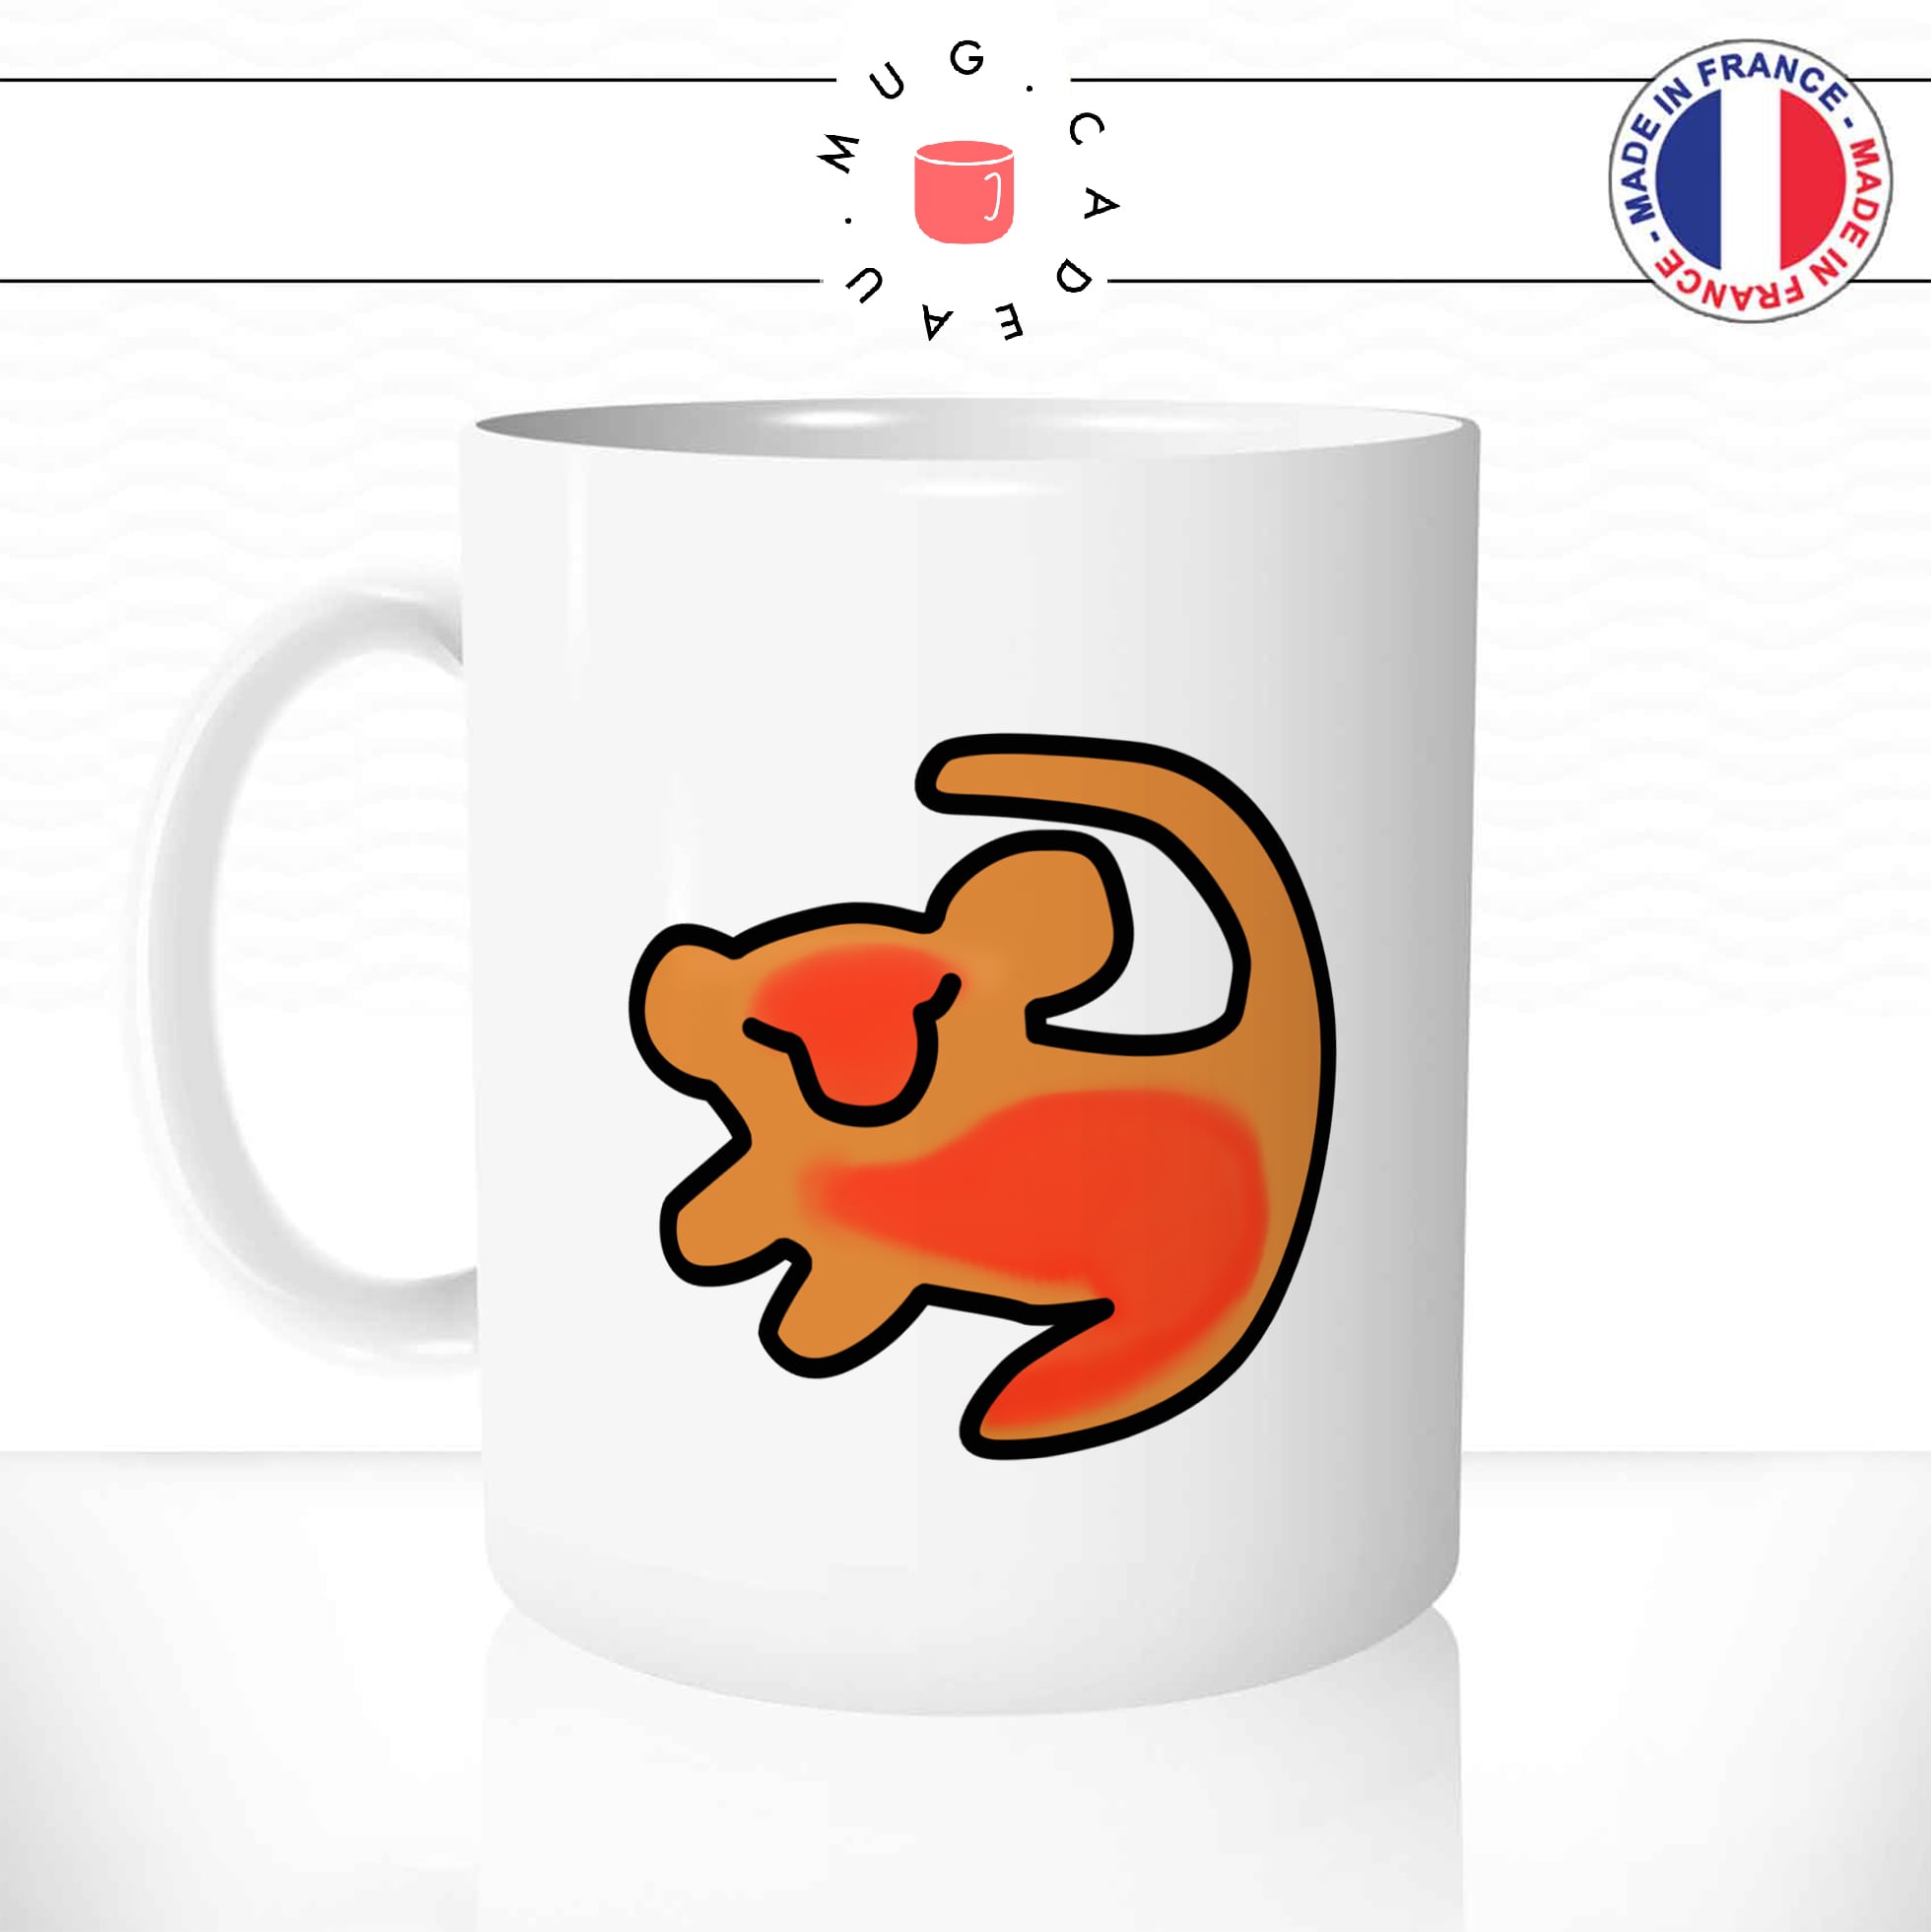 mug-tasse-animal-lion-roi-savanne-couronne-drole-mignon-dessin-animé-classique-culte-cool-fun-mugs-tasses-café-thé-idée-cadeau-original-personnalisé-personnalisable